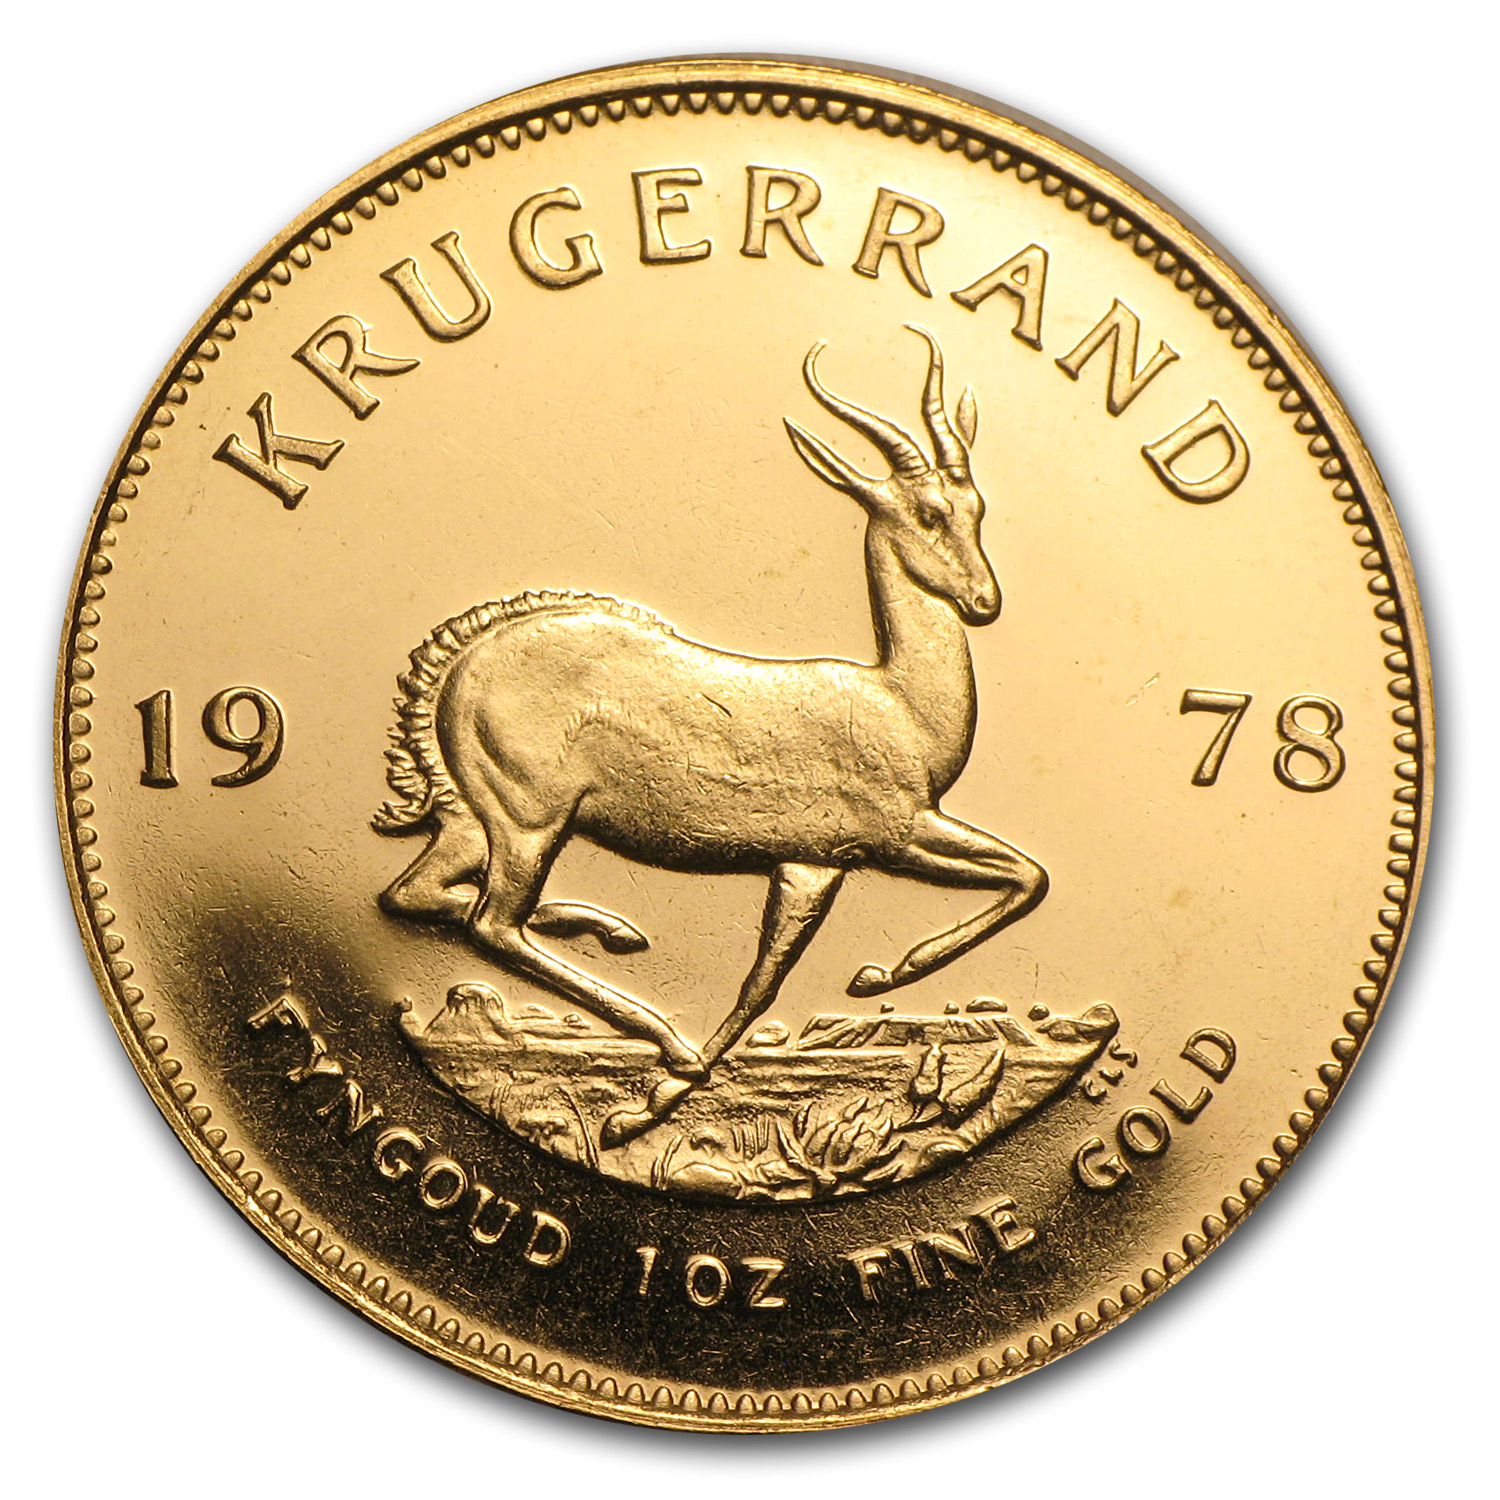 Buy 1978 South Africa 1 oz Gold Krugerrand BU